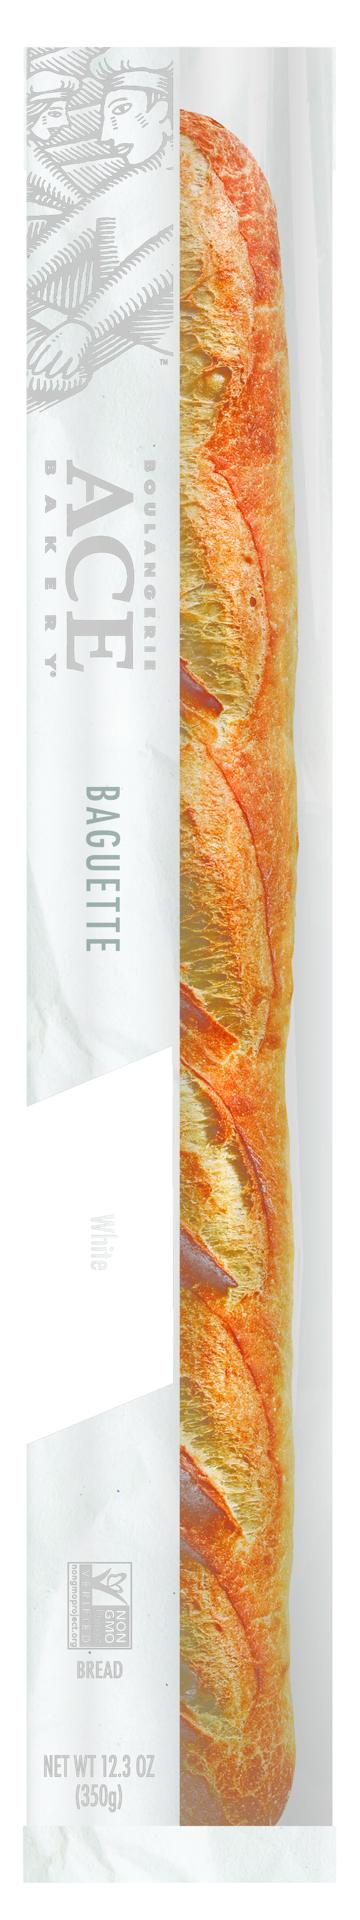 slide 1 of 13, ACE Bakery Artisan White Baguette, 12.3 oz